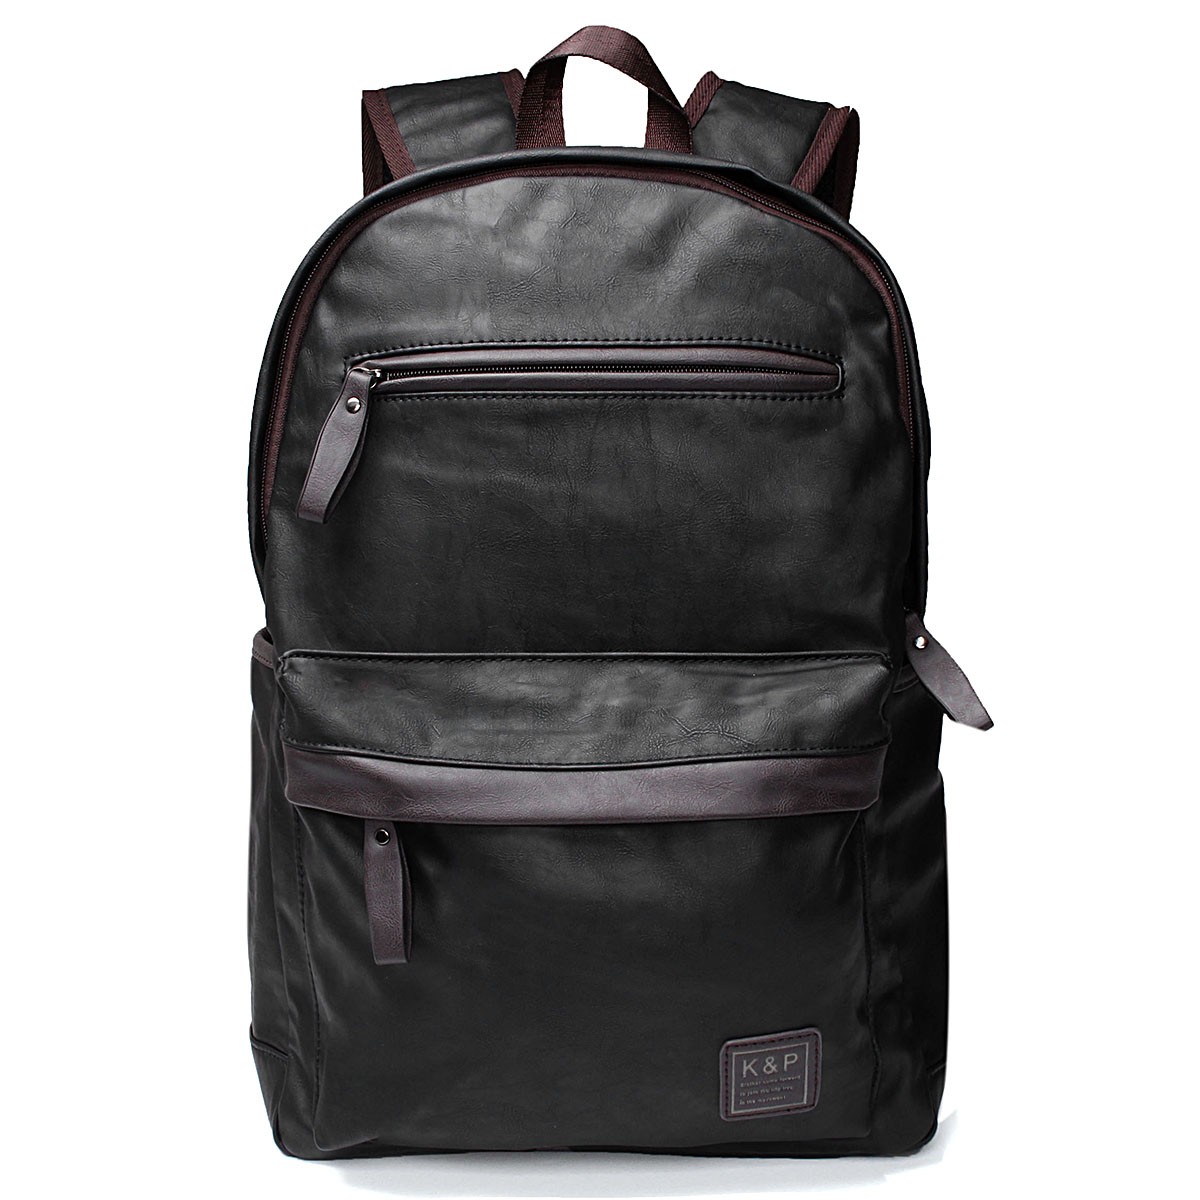 

Mens Leather Laptop Hiking Backpack Rucksack Shoulder Travel School Bag